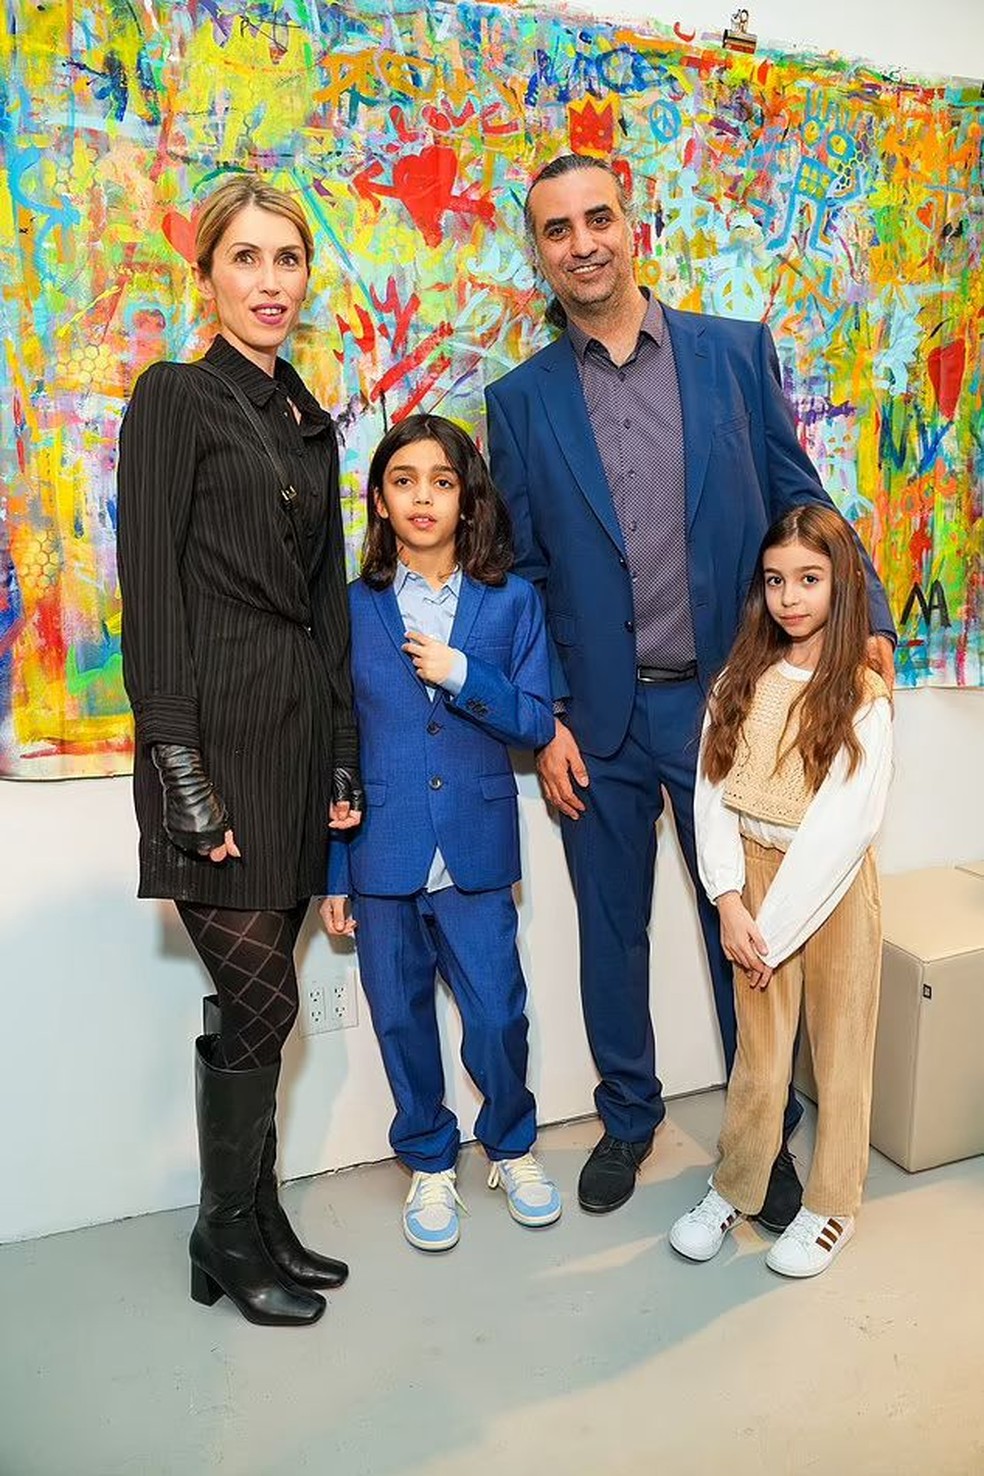 Menino de 10 anos pinta quadros e vende suas obras por mais de R$1 milhão